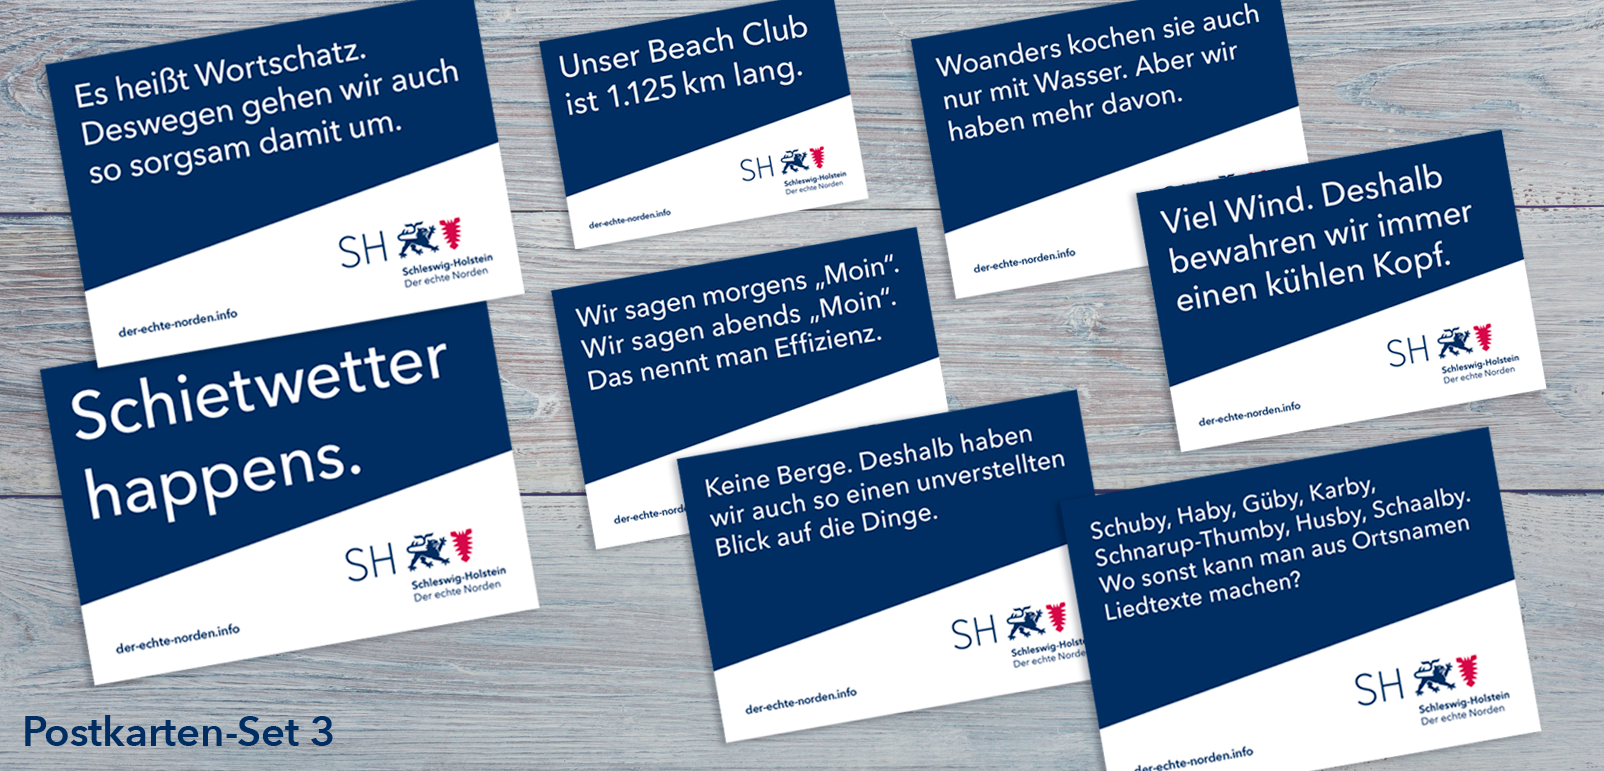  Postkartenset 3 mit blauer Diagonale auf weißem Grund. Darauf ein Spruch wie:"Unser Beach Club ist 1.125km lang".